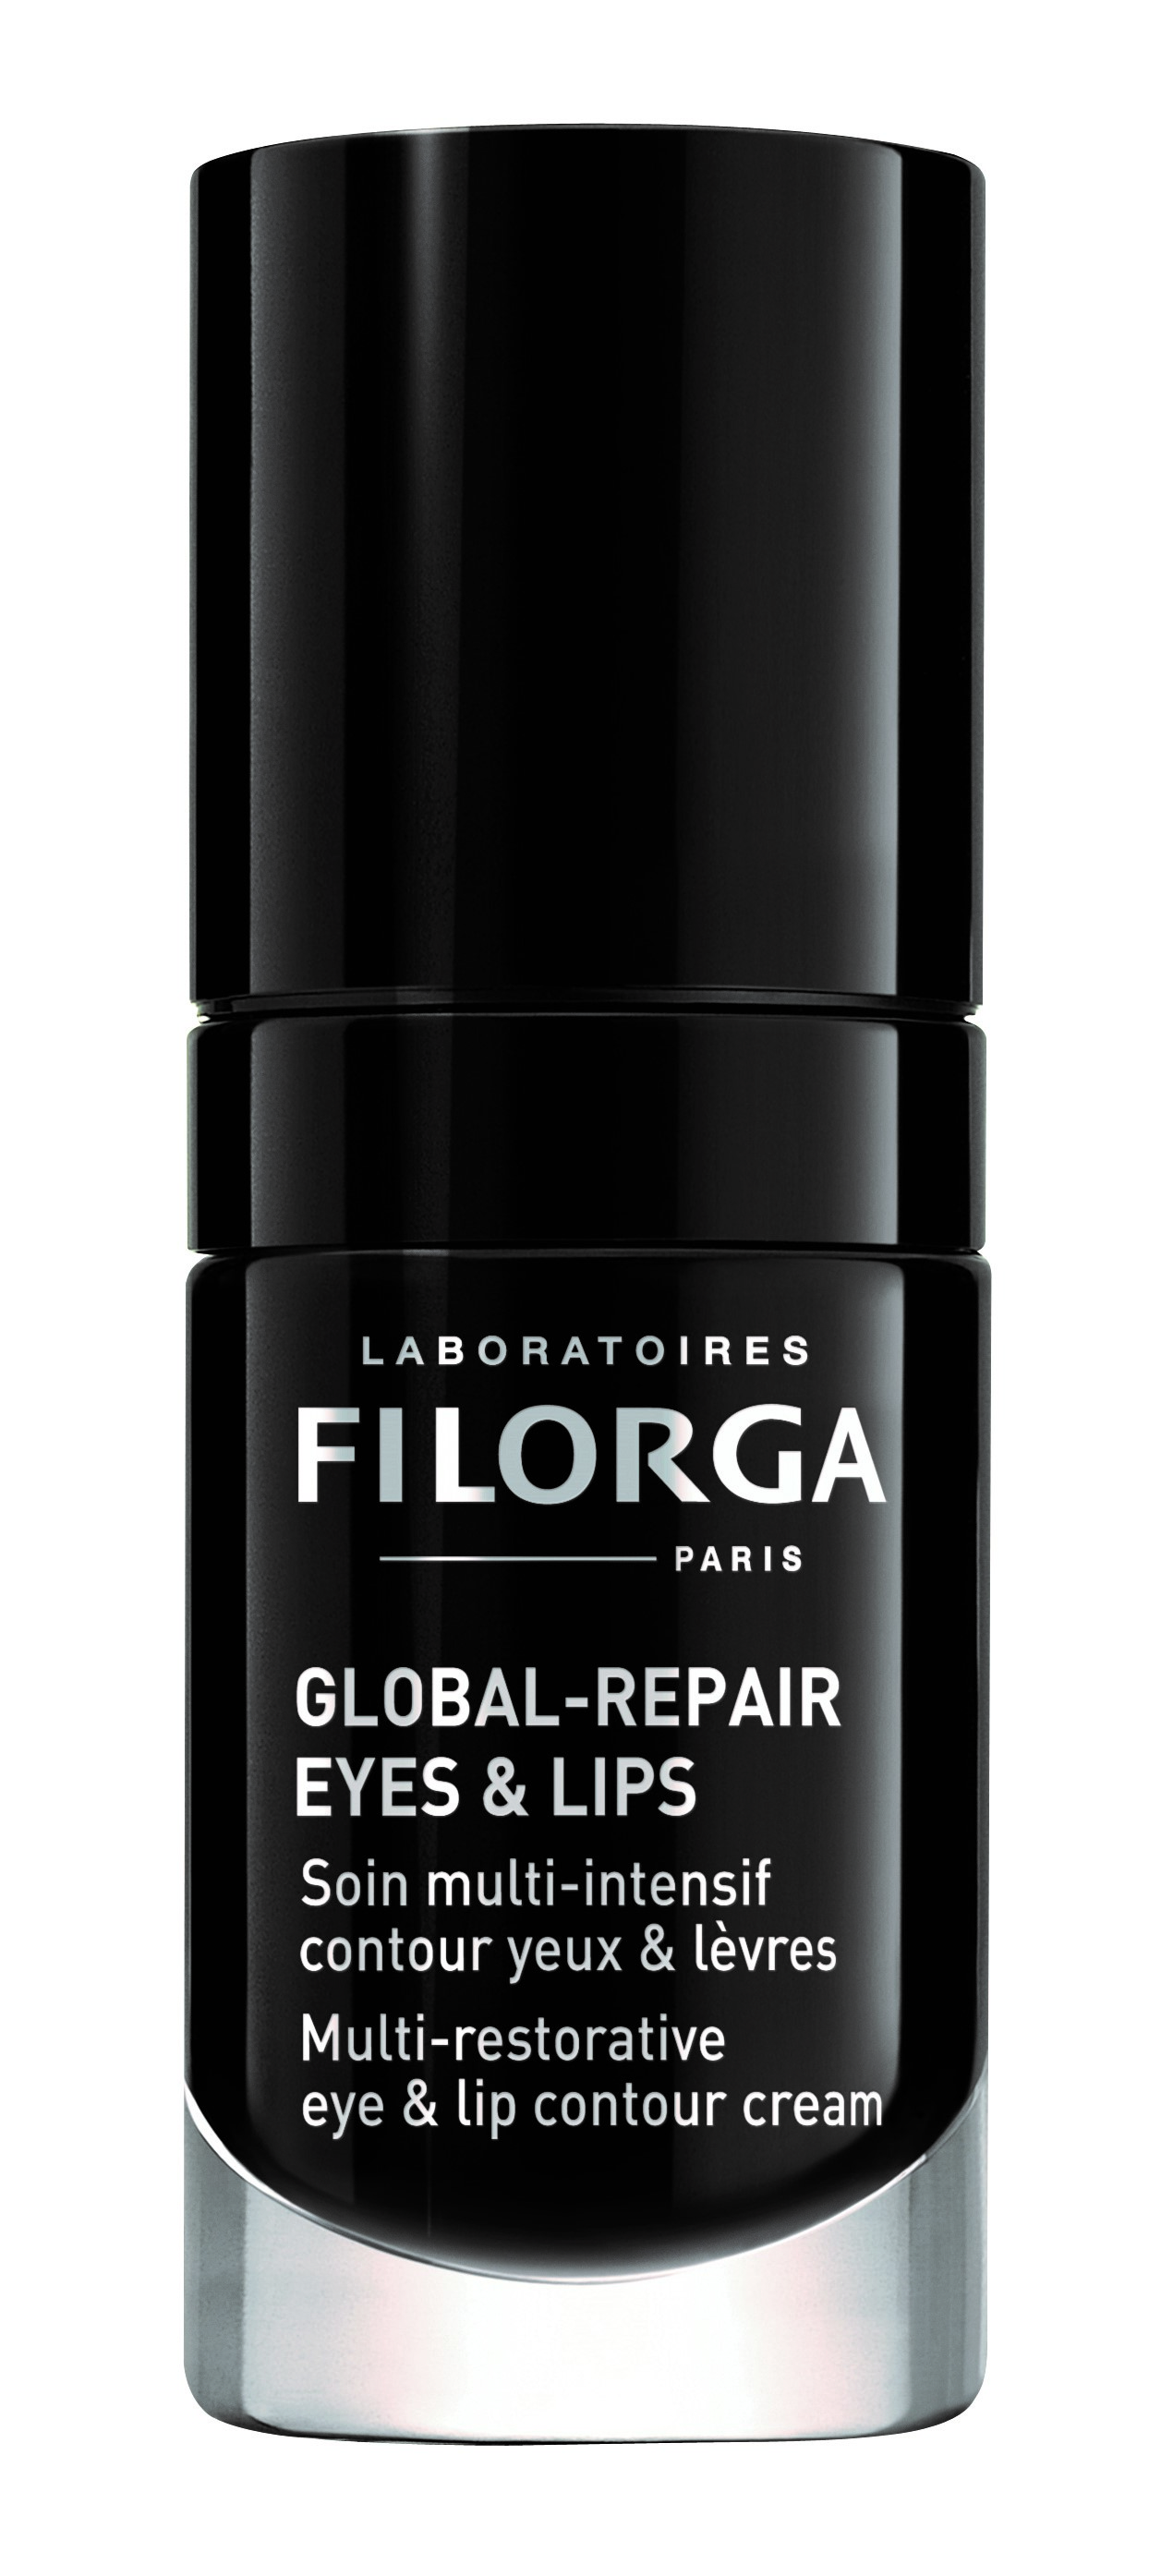 Global-Repair Eyes & Lips